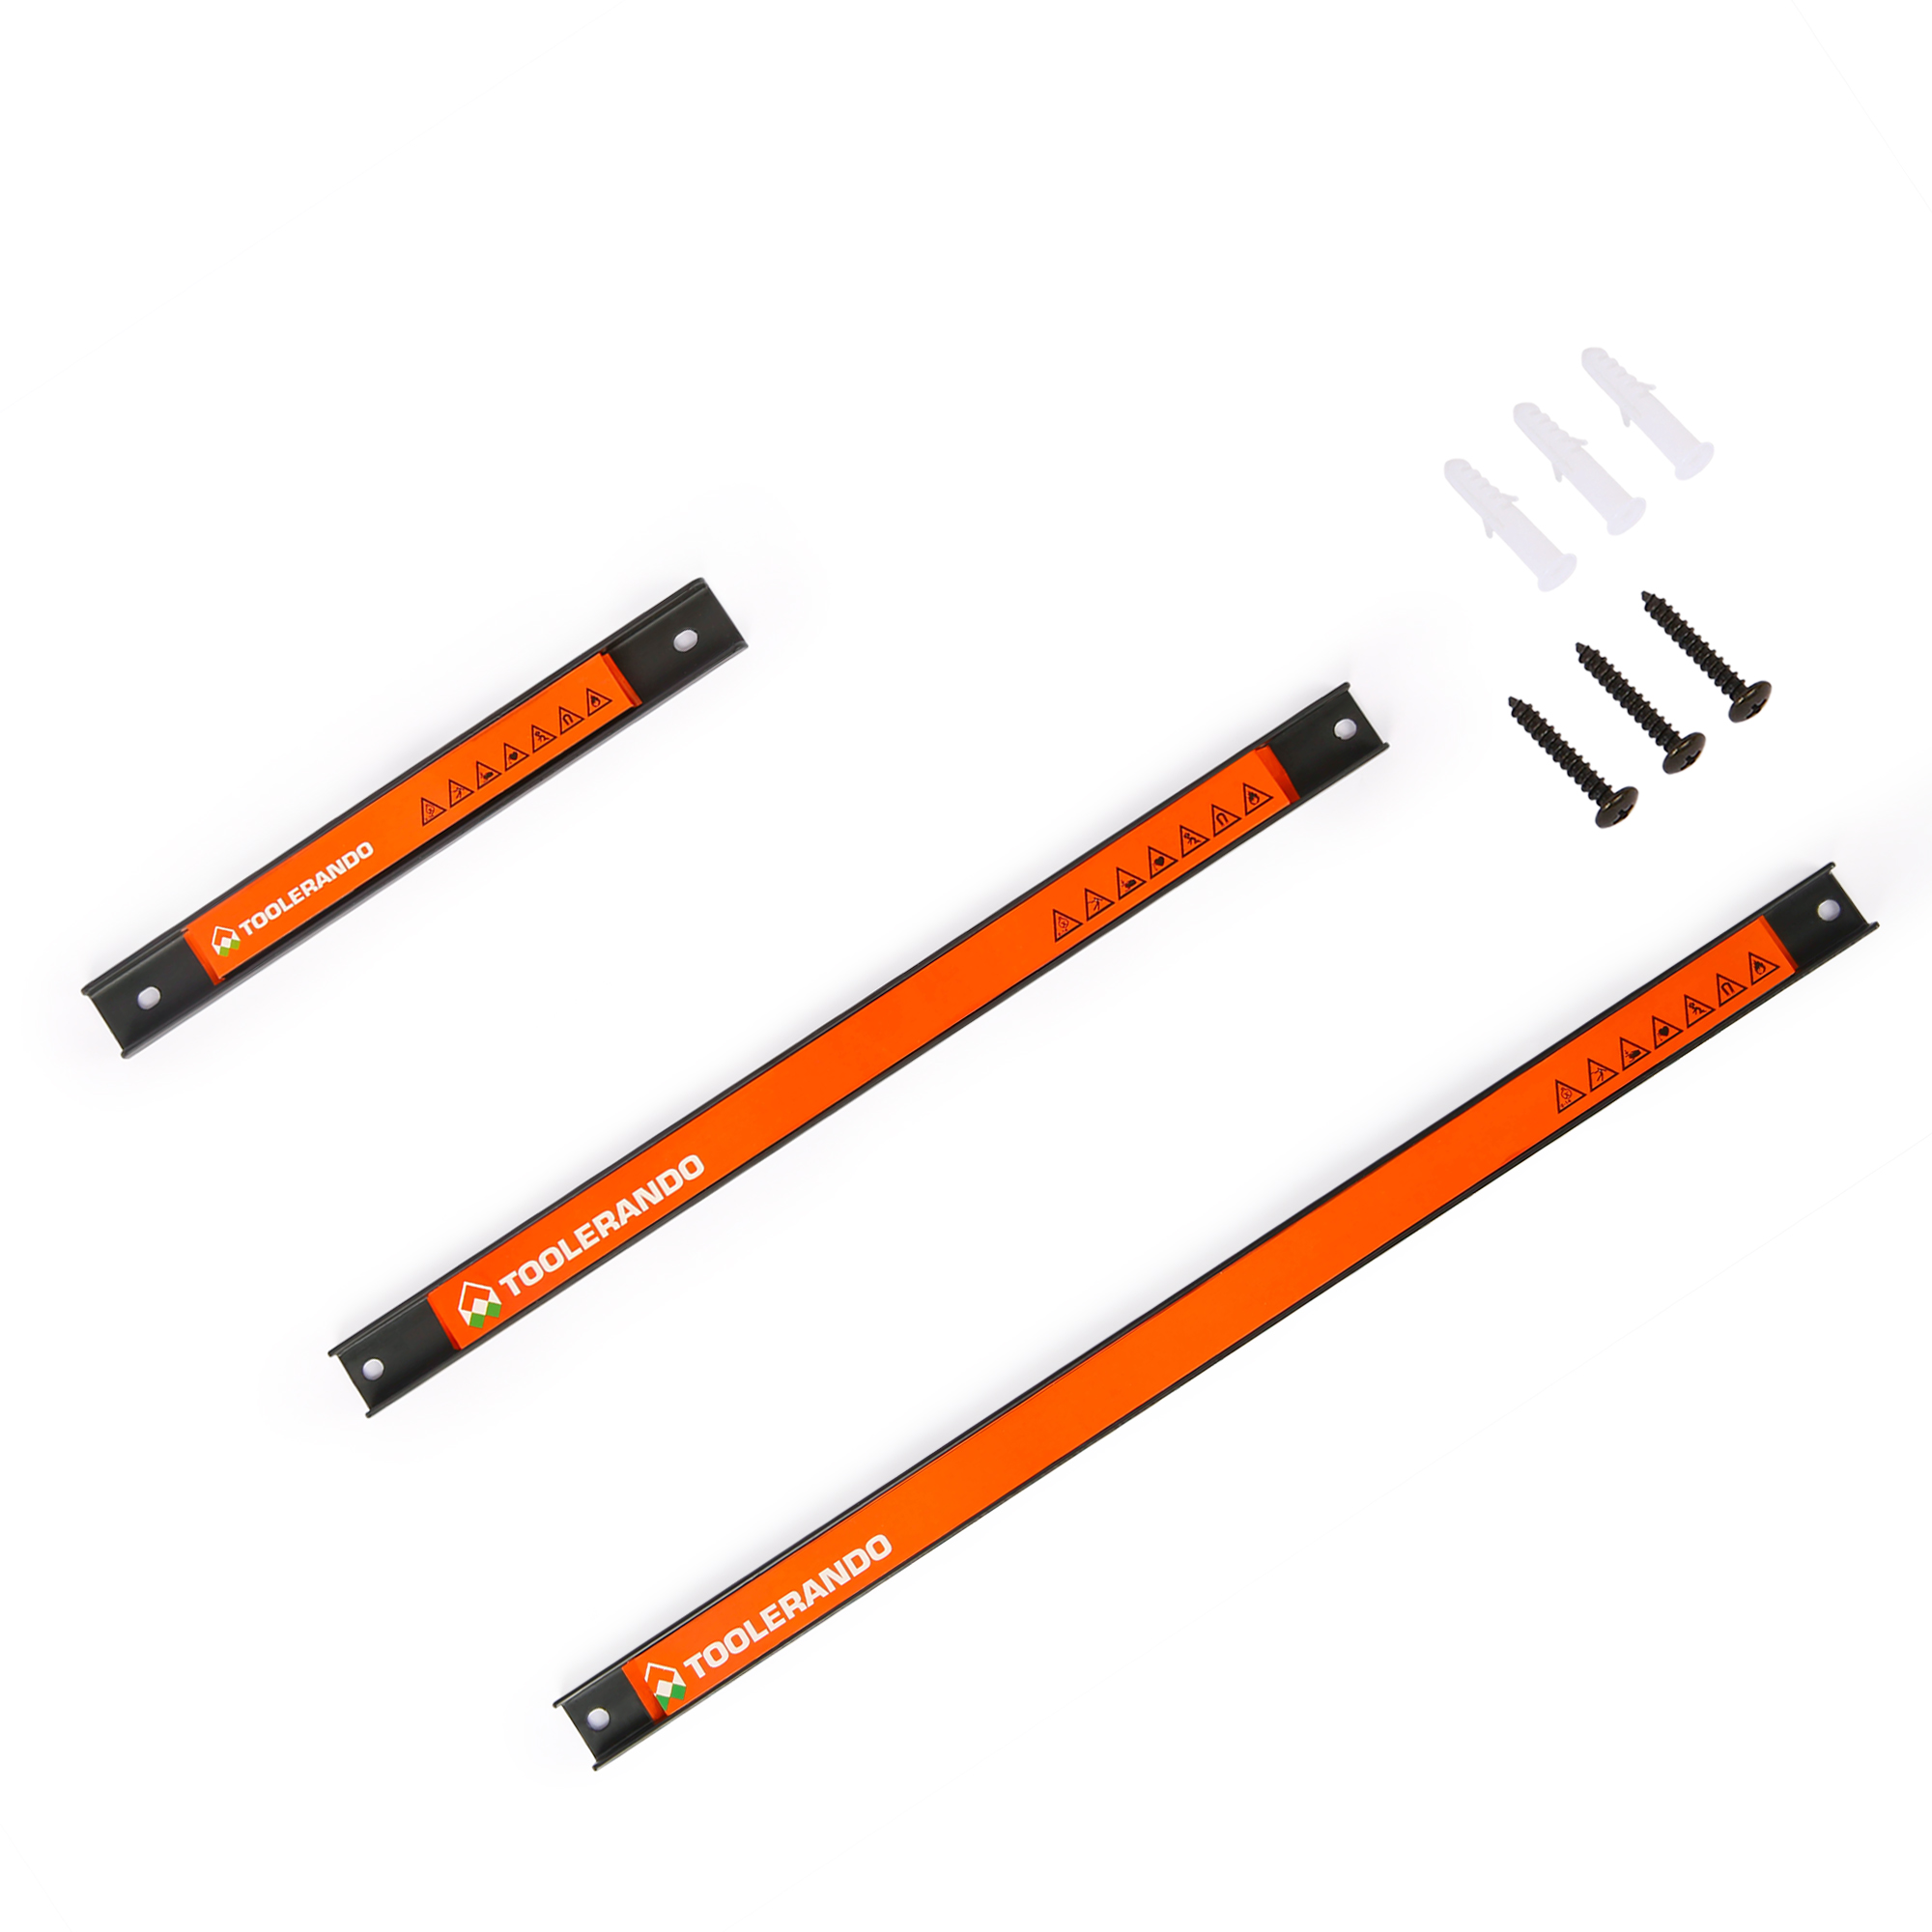 Bande magnétique pour outils support aimant porte-outil rail couteaux Toolerando 